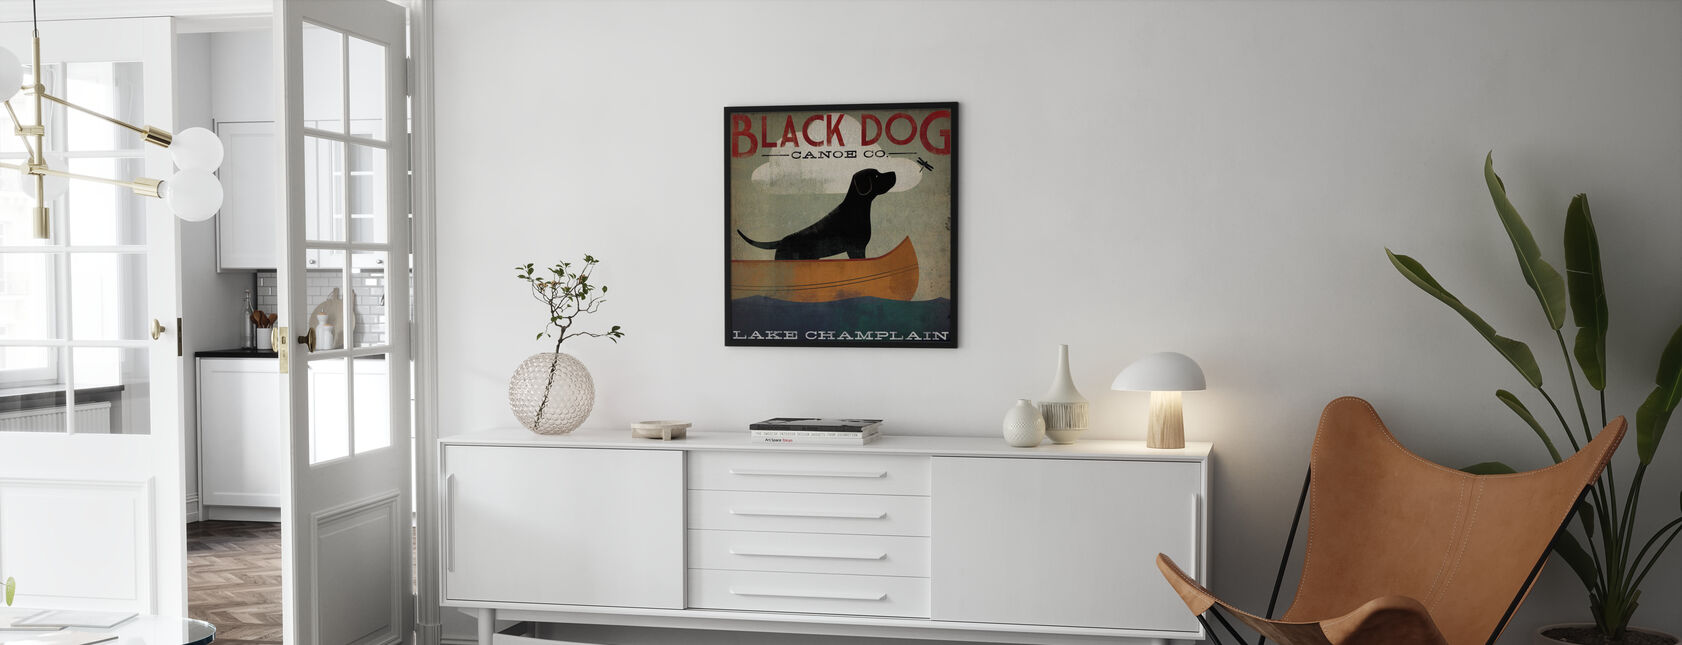 Black Dog Lake Champlain - Poster - Living Room